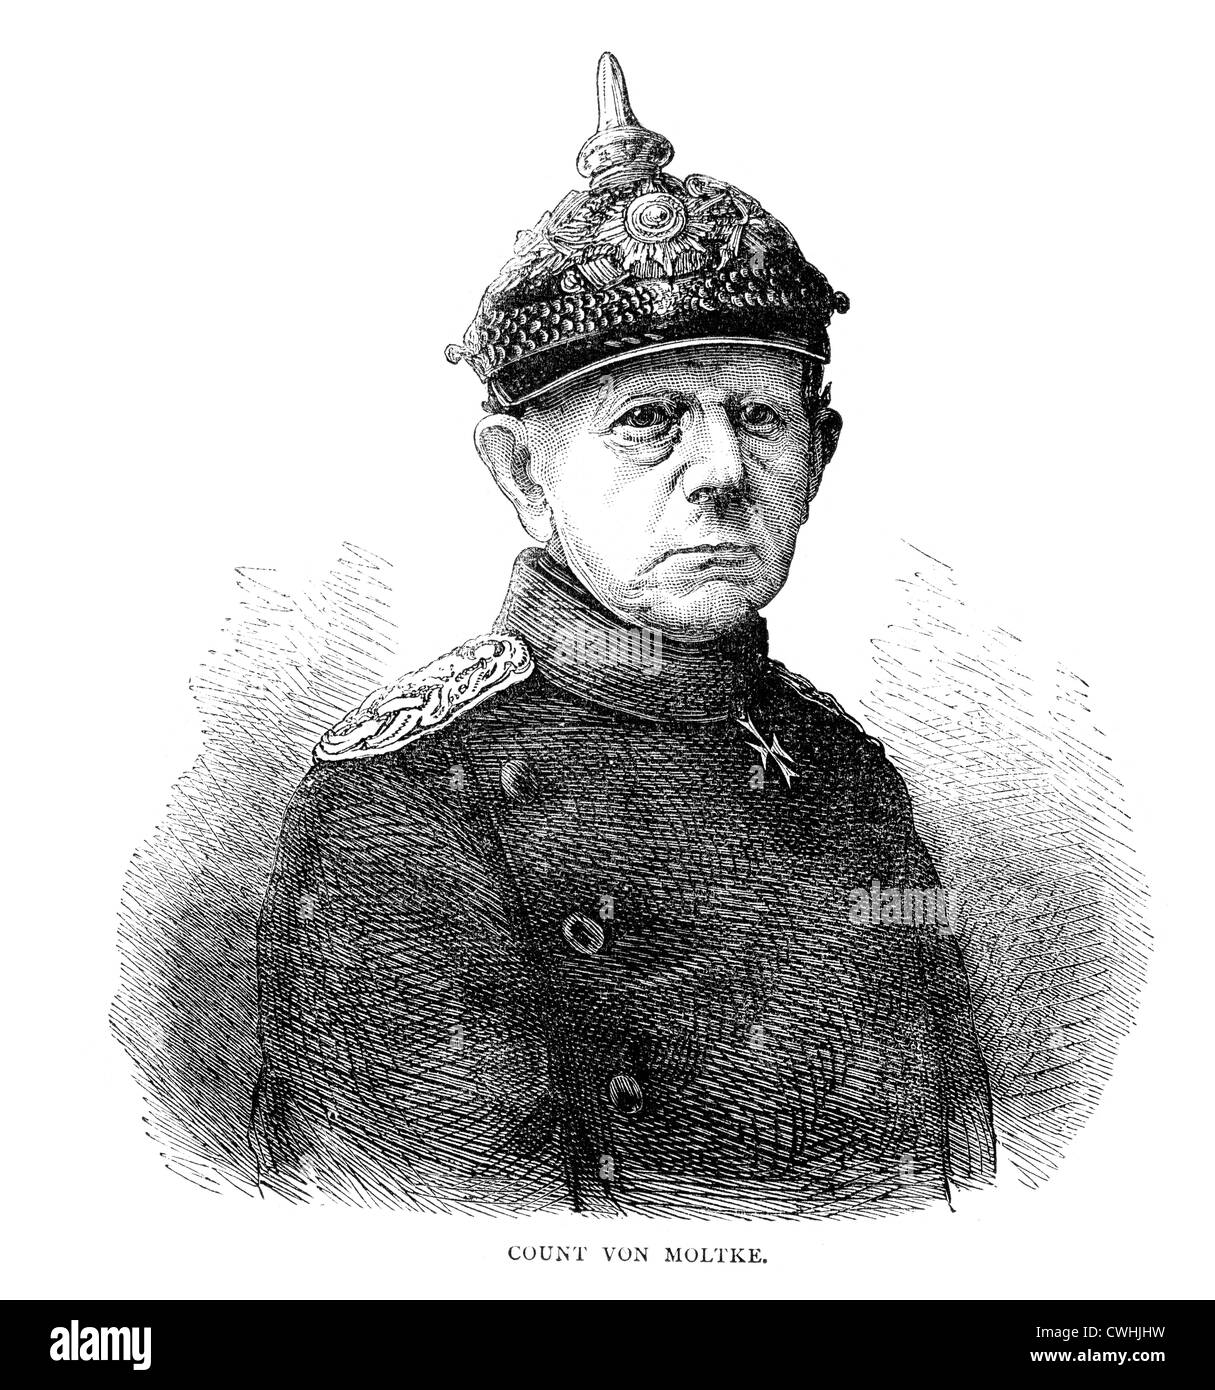 Helmuth Karl Bernhard Graf von Moltke (1800 to 1891) was a German Field Marshal. Stock Photo